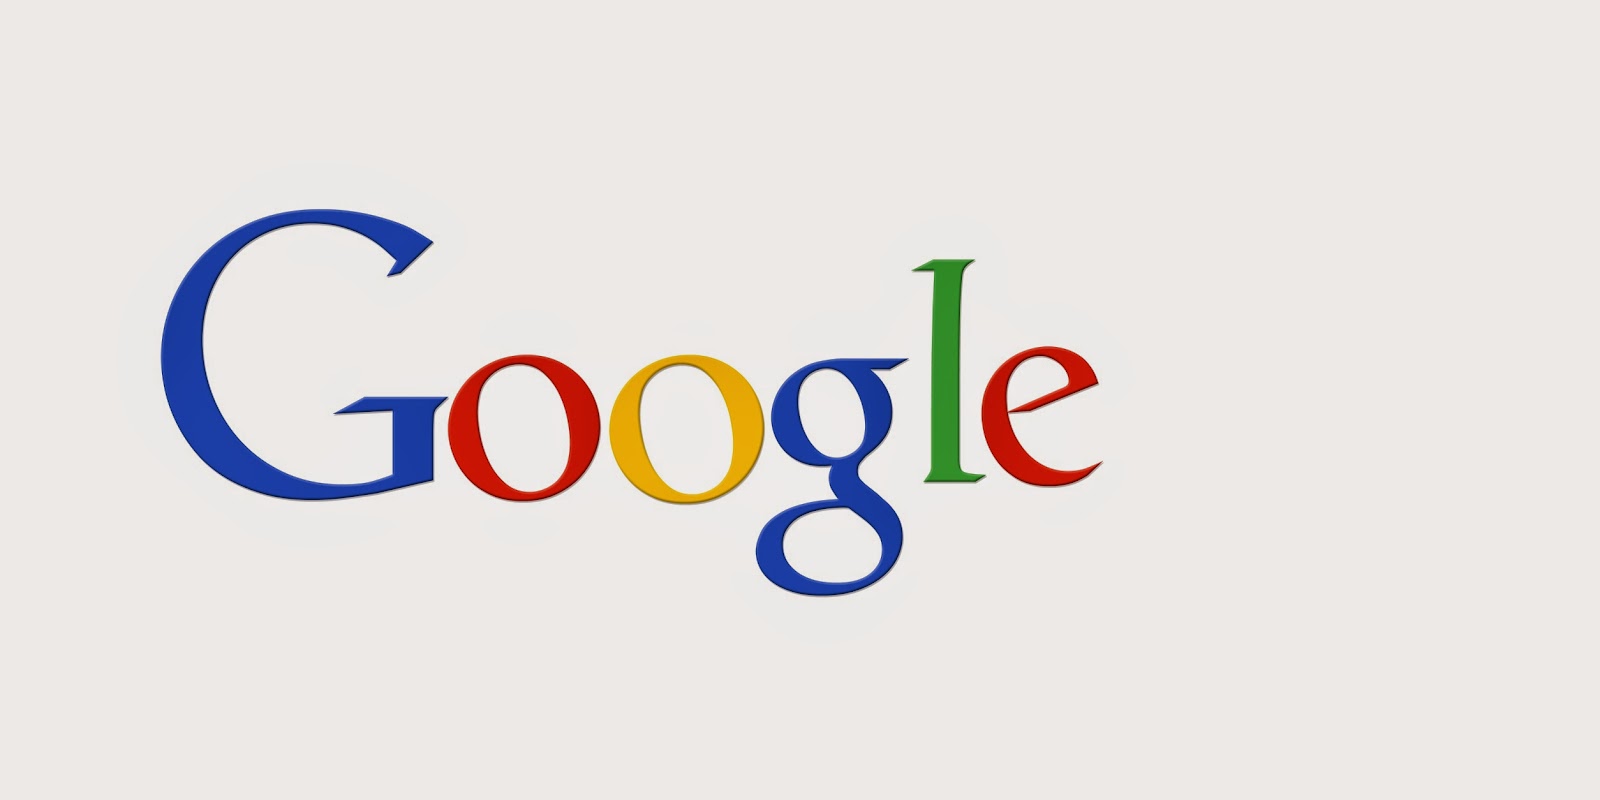  جوجل ستدعم سامسونغ في قضيتها ضد آبل ! 